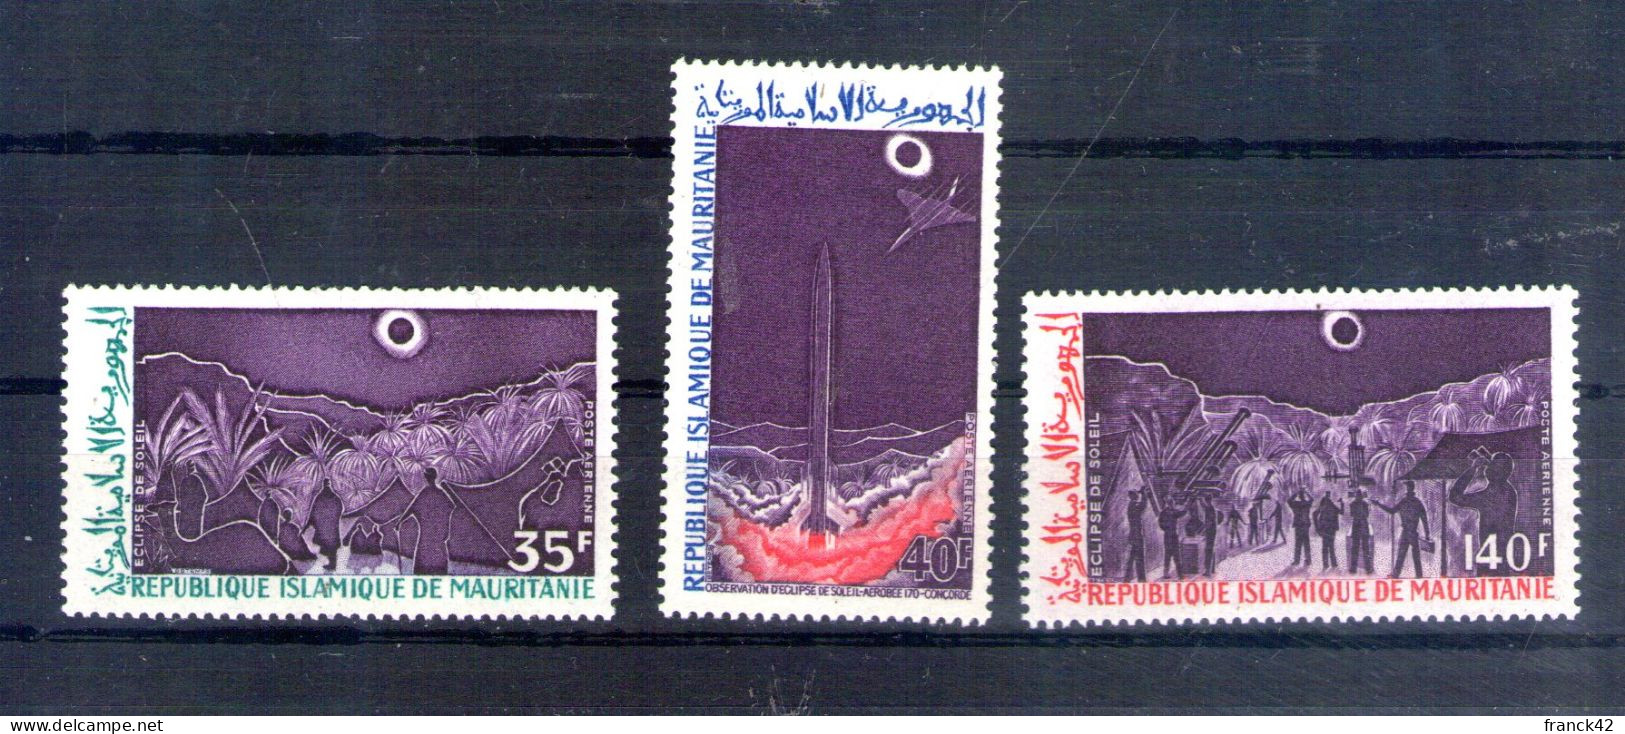 Mauritanie. Poste Aérienne. Observation D'éclipse Totale Du Soleil - Mauritanie (1960-...)